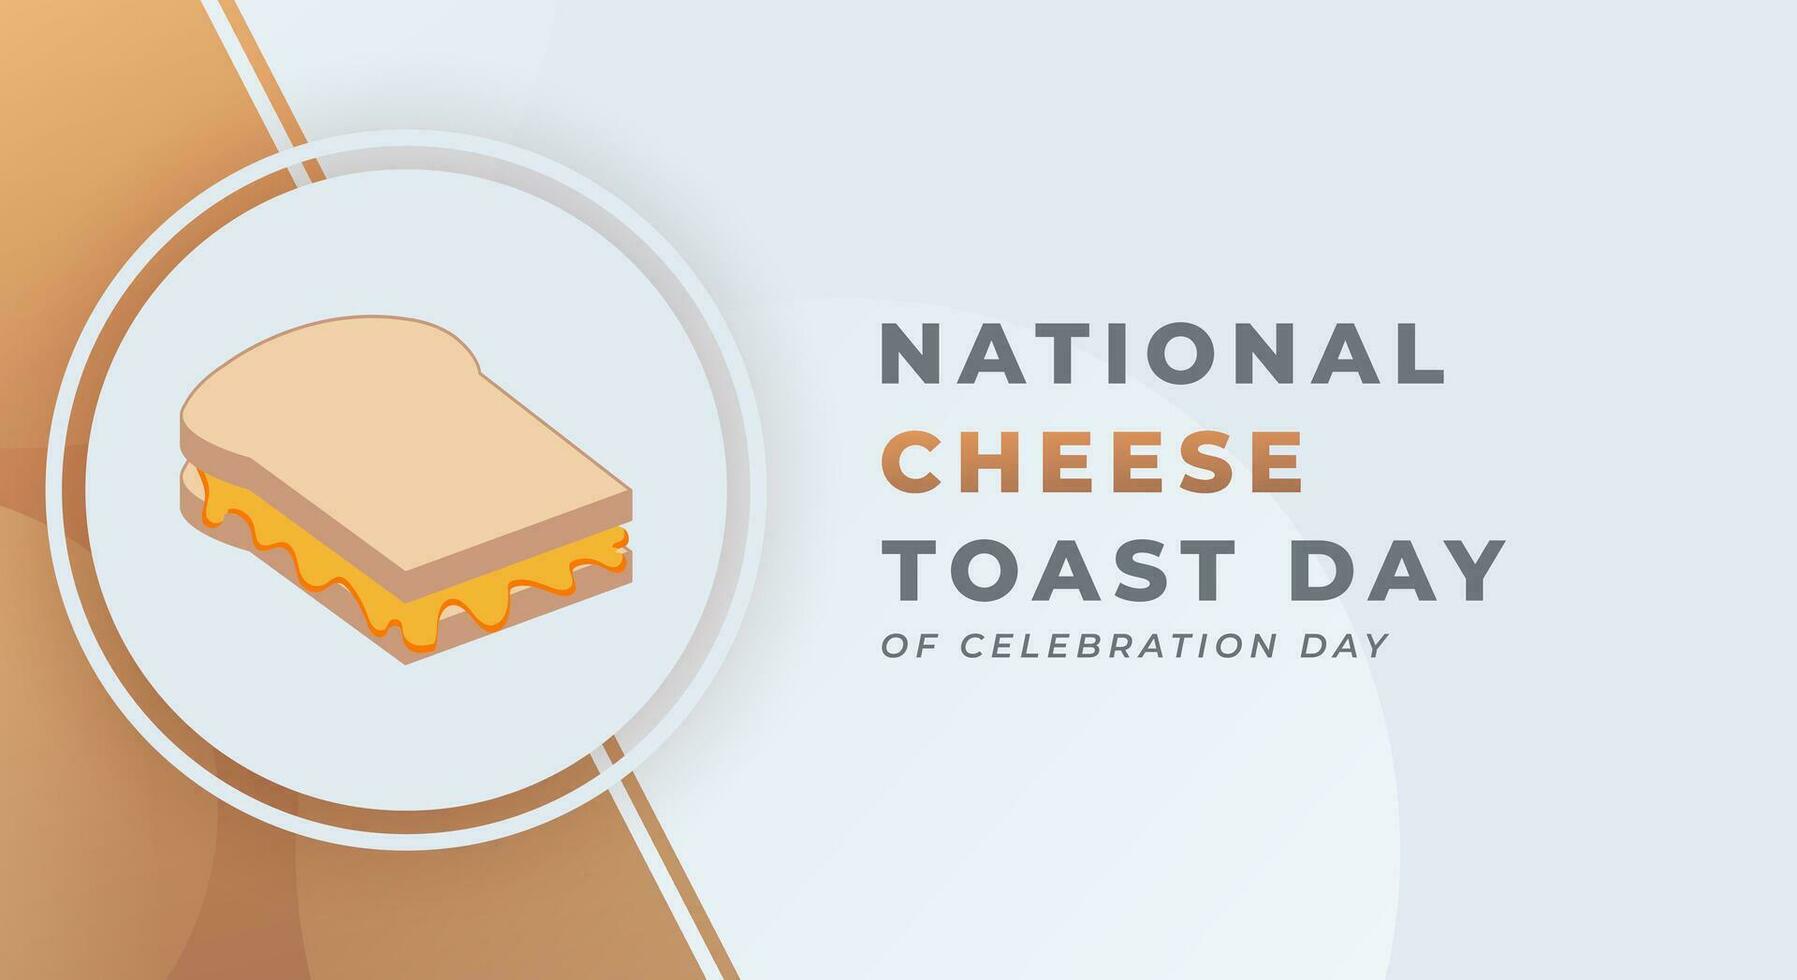 nationaal kaas geroosterd brood dag viering vector ontwerp illustratie voor achtergrond, poster, banier, reclame, groet kaart